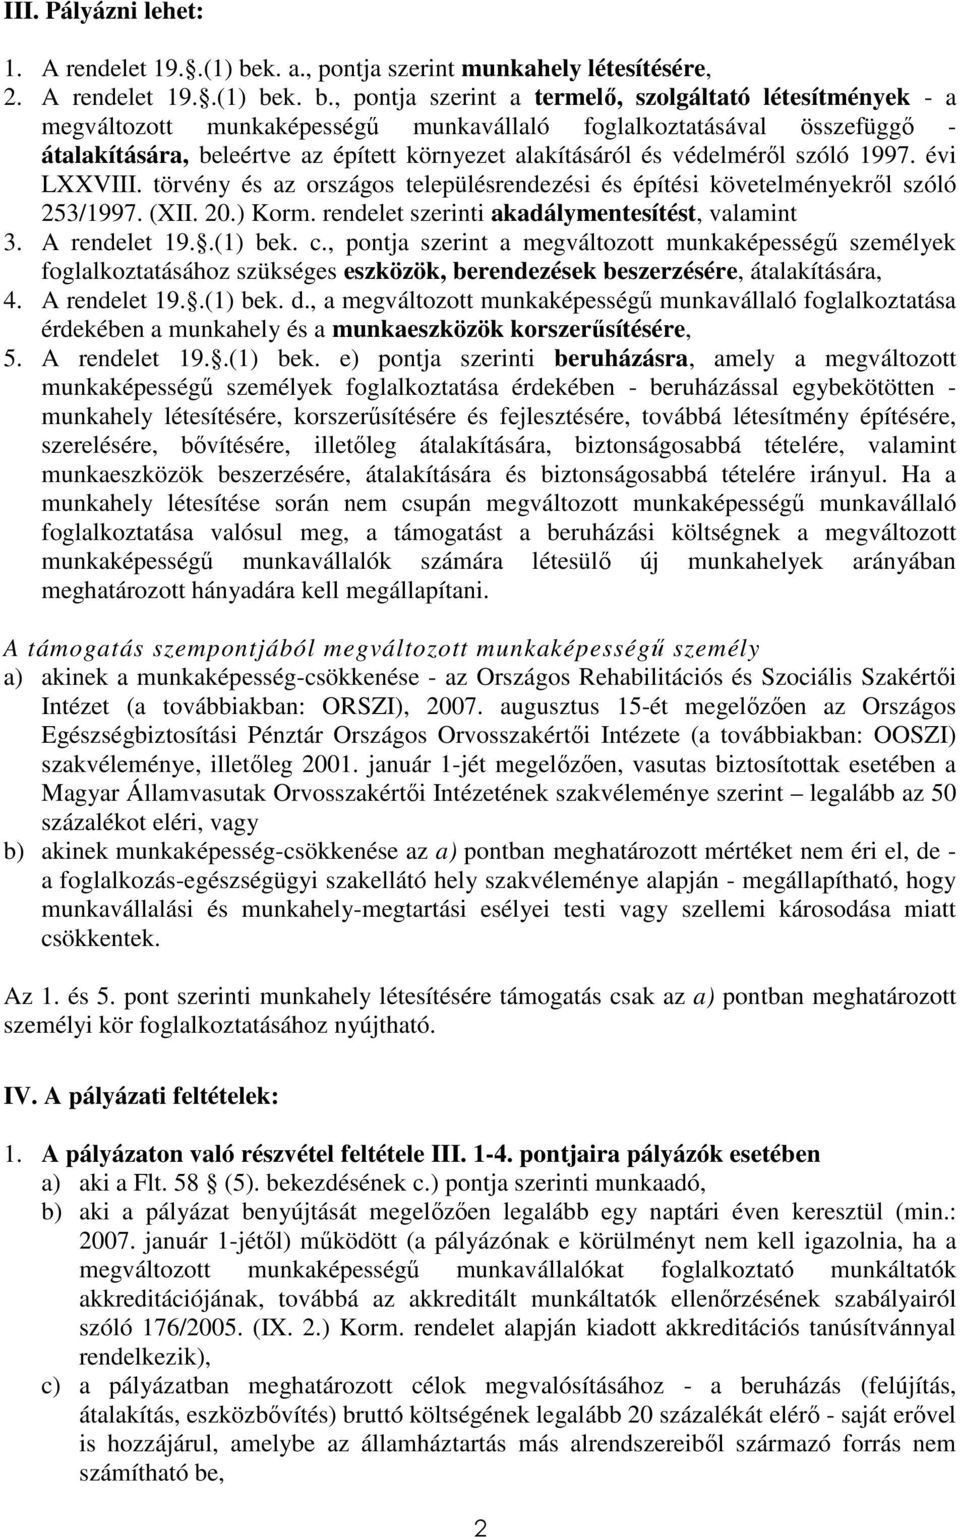 k. b., pontja szerint a termelı, szolgáltató létesítmények - a megváltozott munkaképességő munkavállaló foglalkoztatásával összefüggı - átalakítására, beleértve az épített környezet alakításáról és